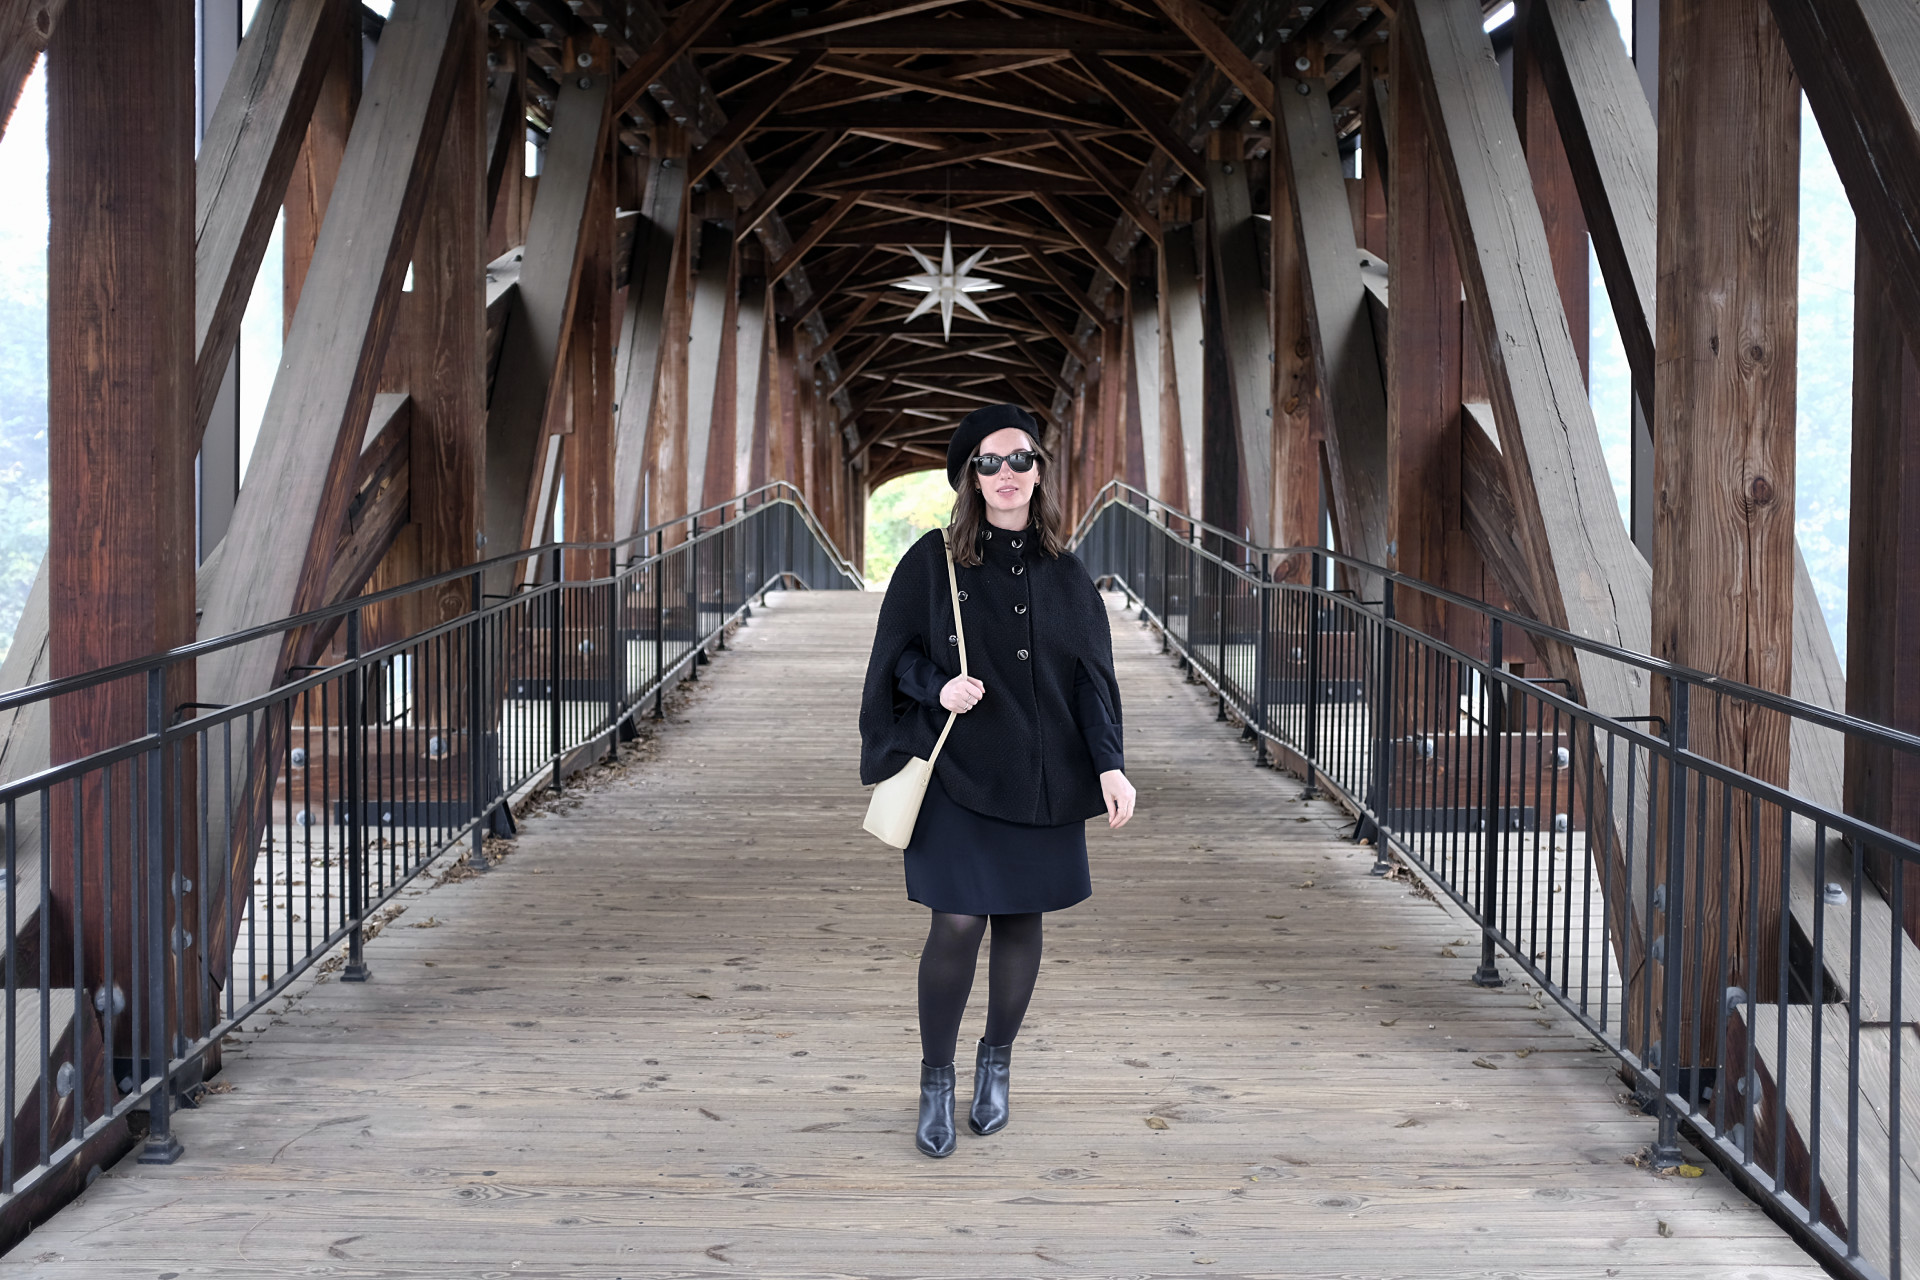 Alyssa stands in front of the Old Salem Bridge